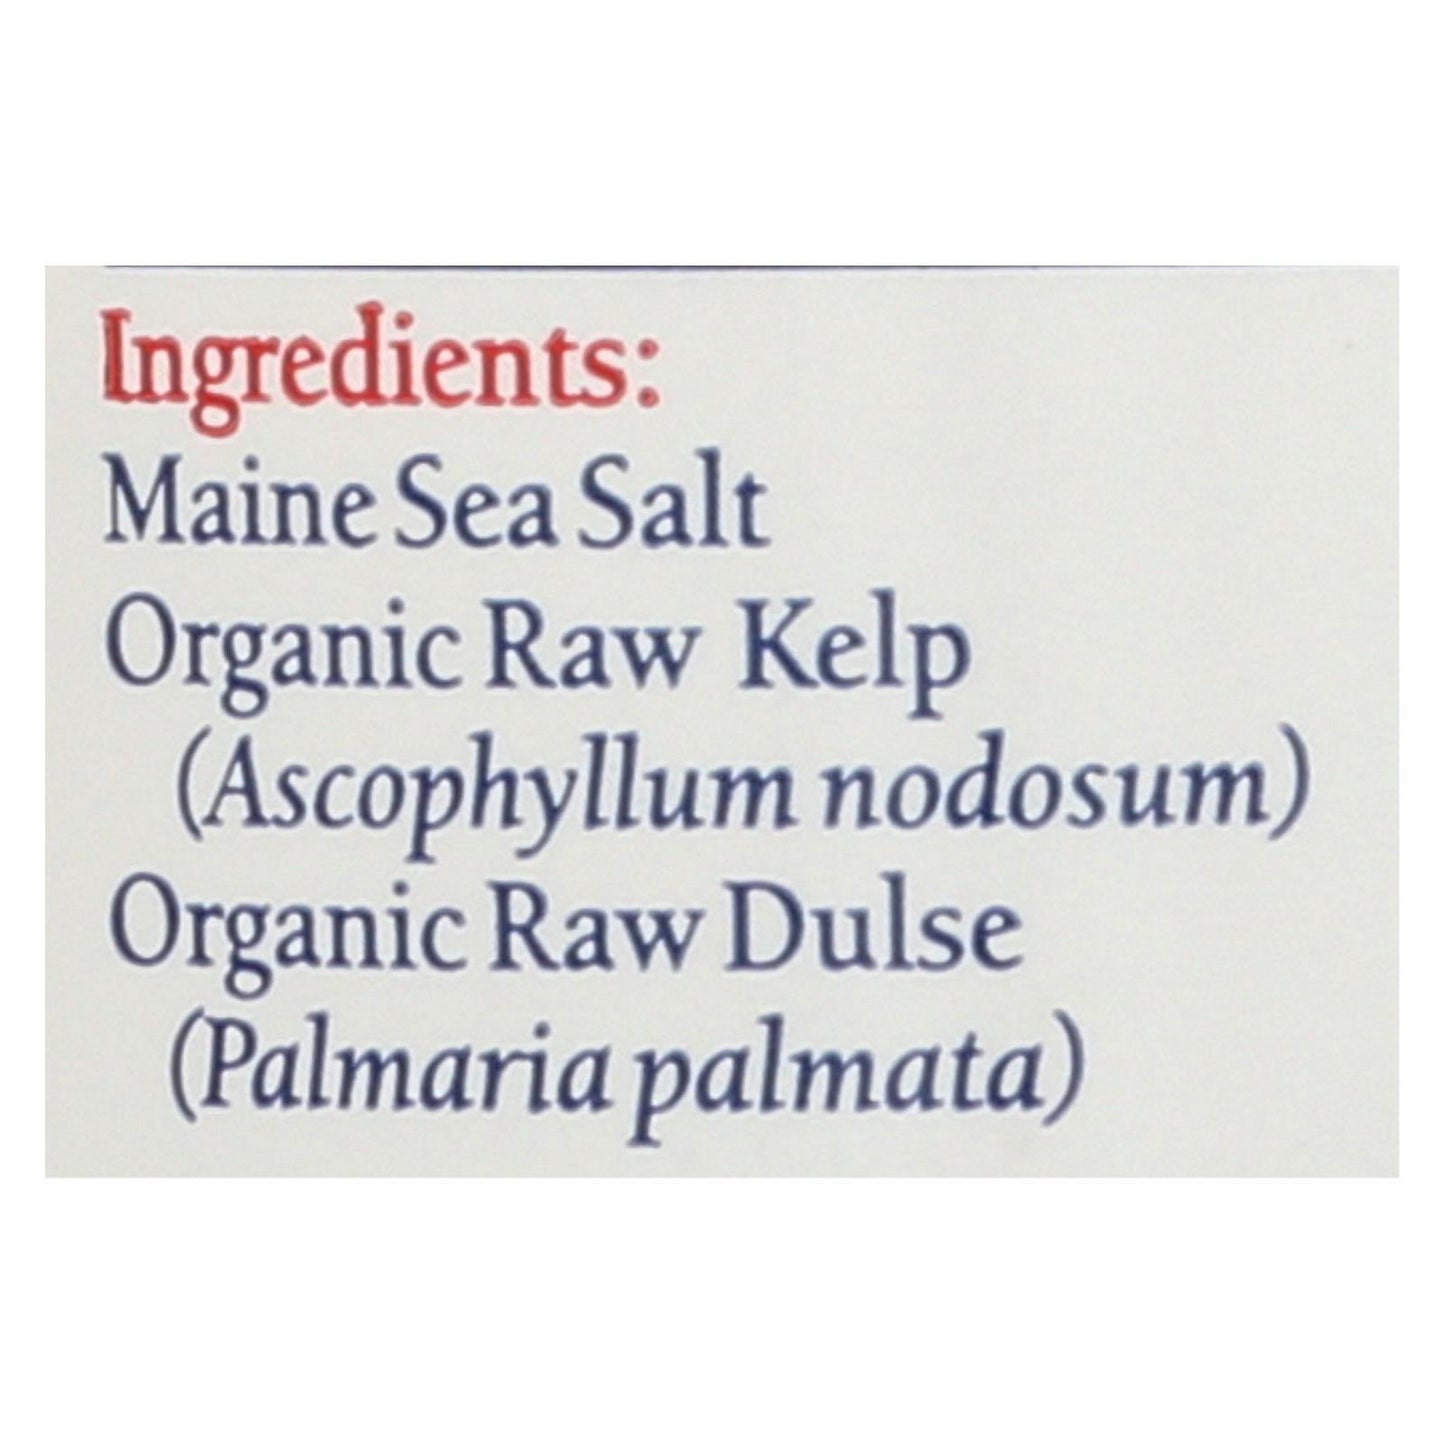 Maine Coast Organic Sea Seasonings - Sea Salt With Sea Veg - 1.5 Oz Shaker - Loomini